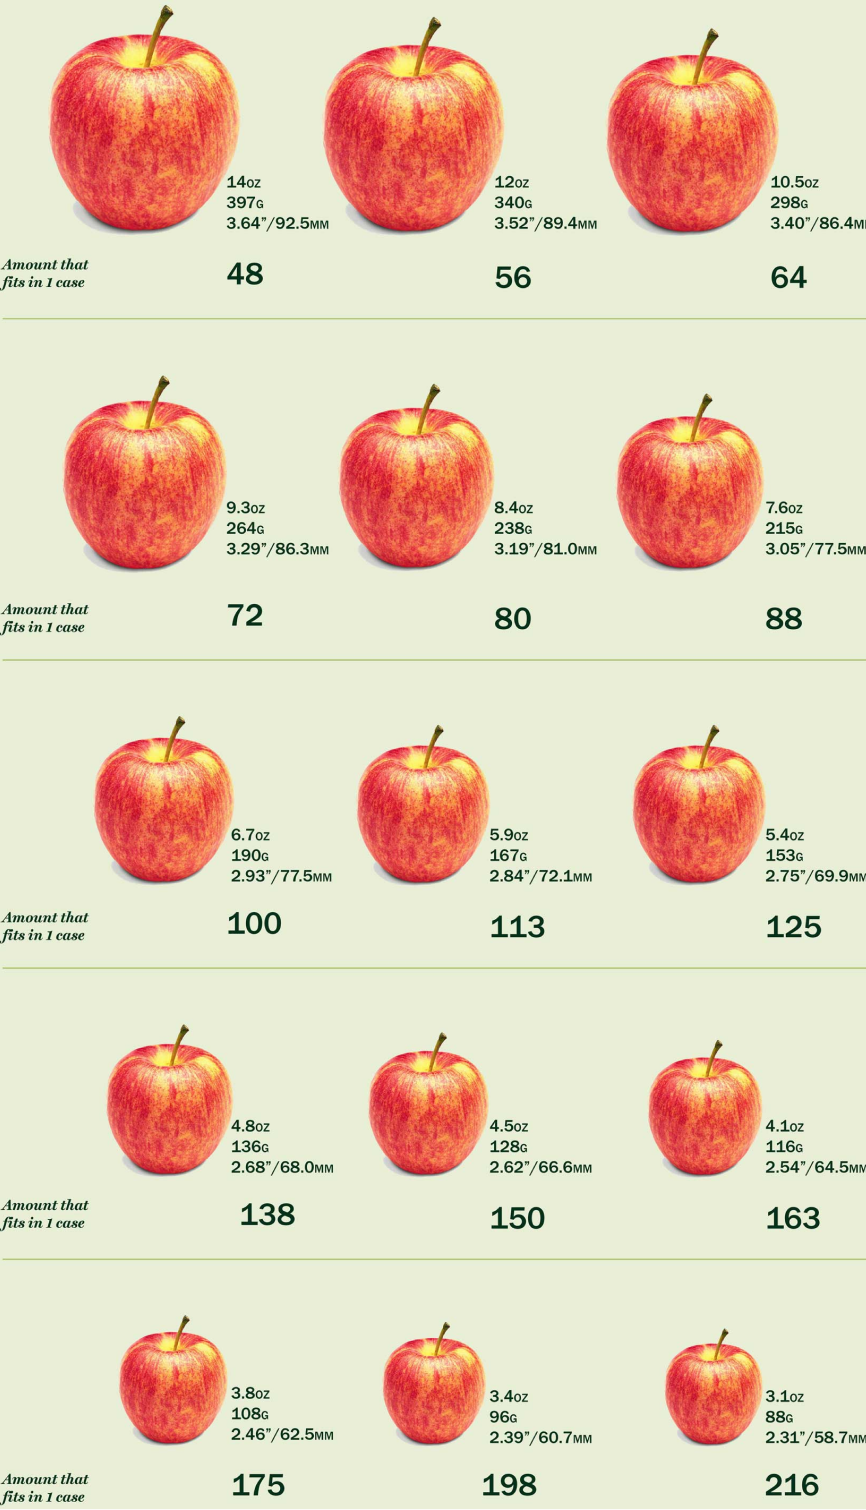 一張圖顯示了從 15 到 216 的 48 種標準蘋果尺寸。